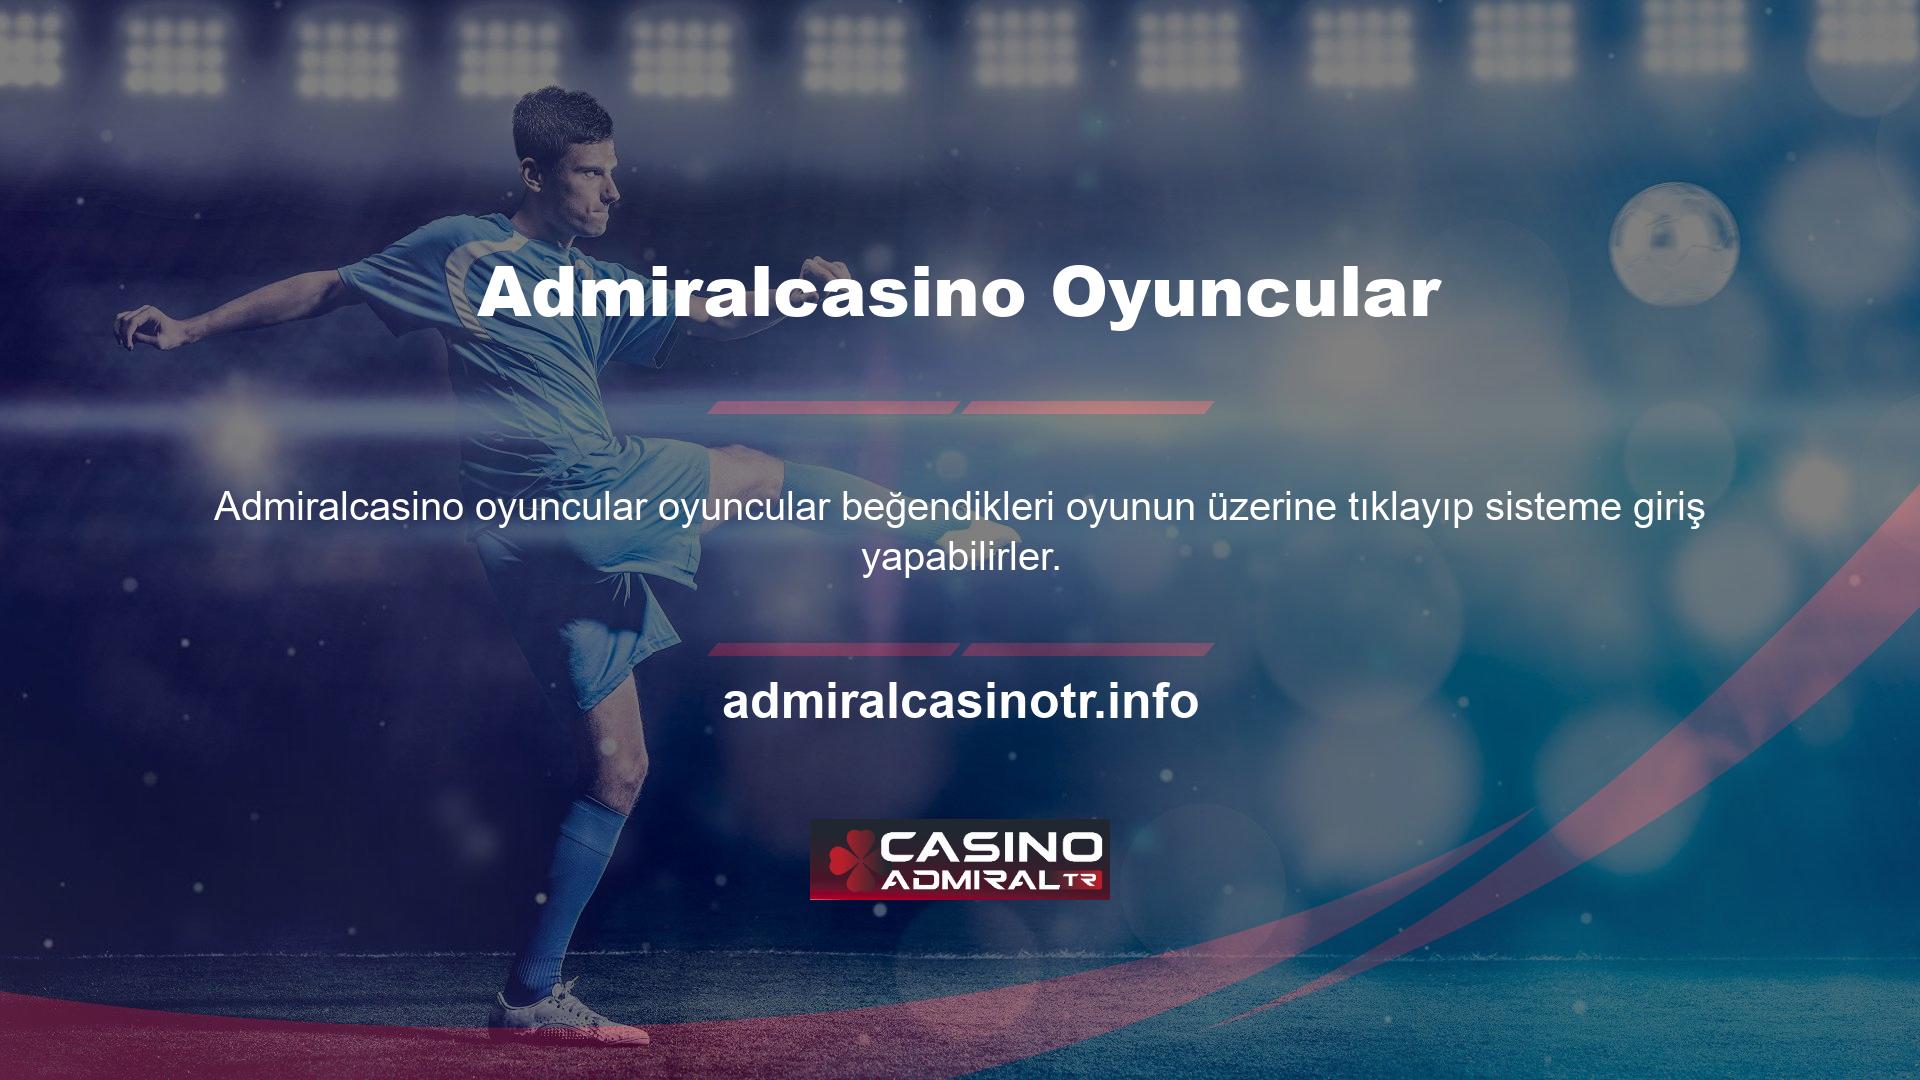 Admiralcasino online oyunları ve internet oyunları üzerinden üye hesabı açabilir, Şirket İçeriğinde belirtilen ödeme yöntemlerini kullanarak anında para yatırabilirsiniz